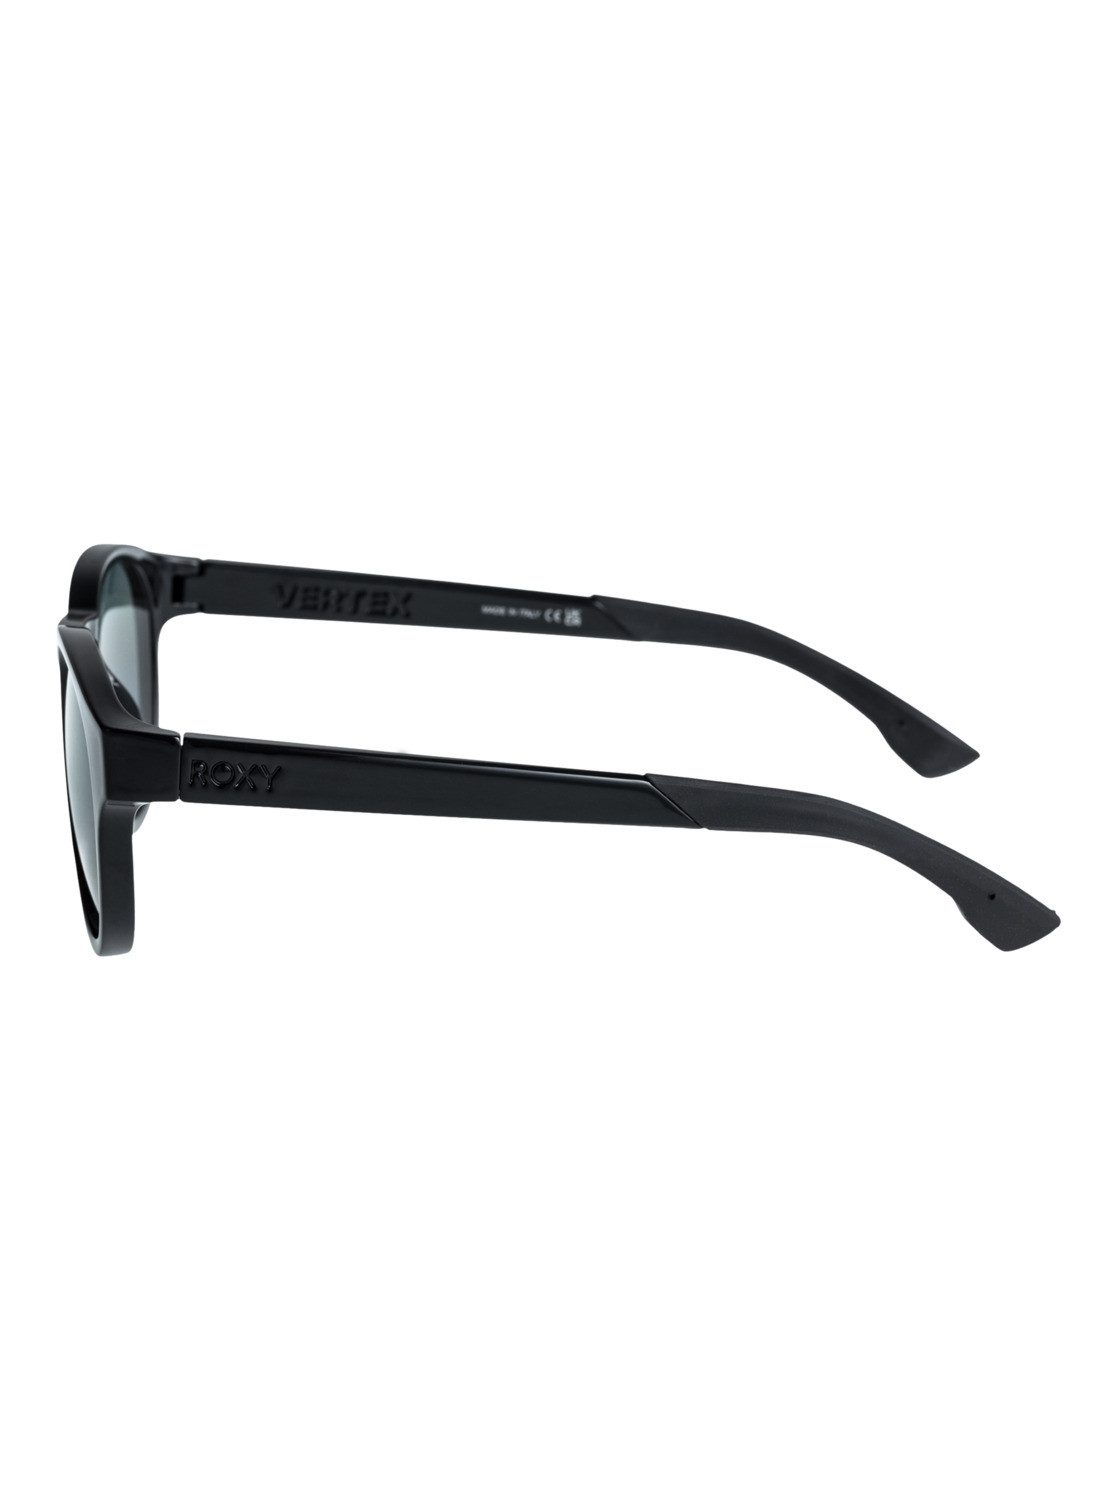 Vertex Plz Roxy P Sonnenbrille Black/Grey